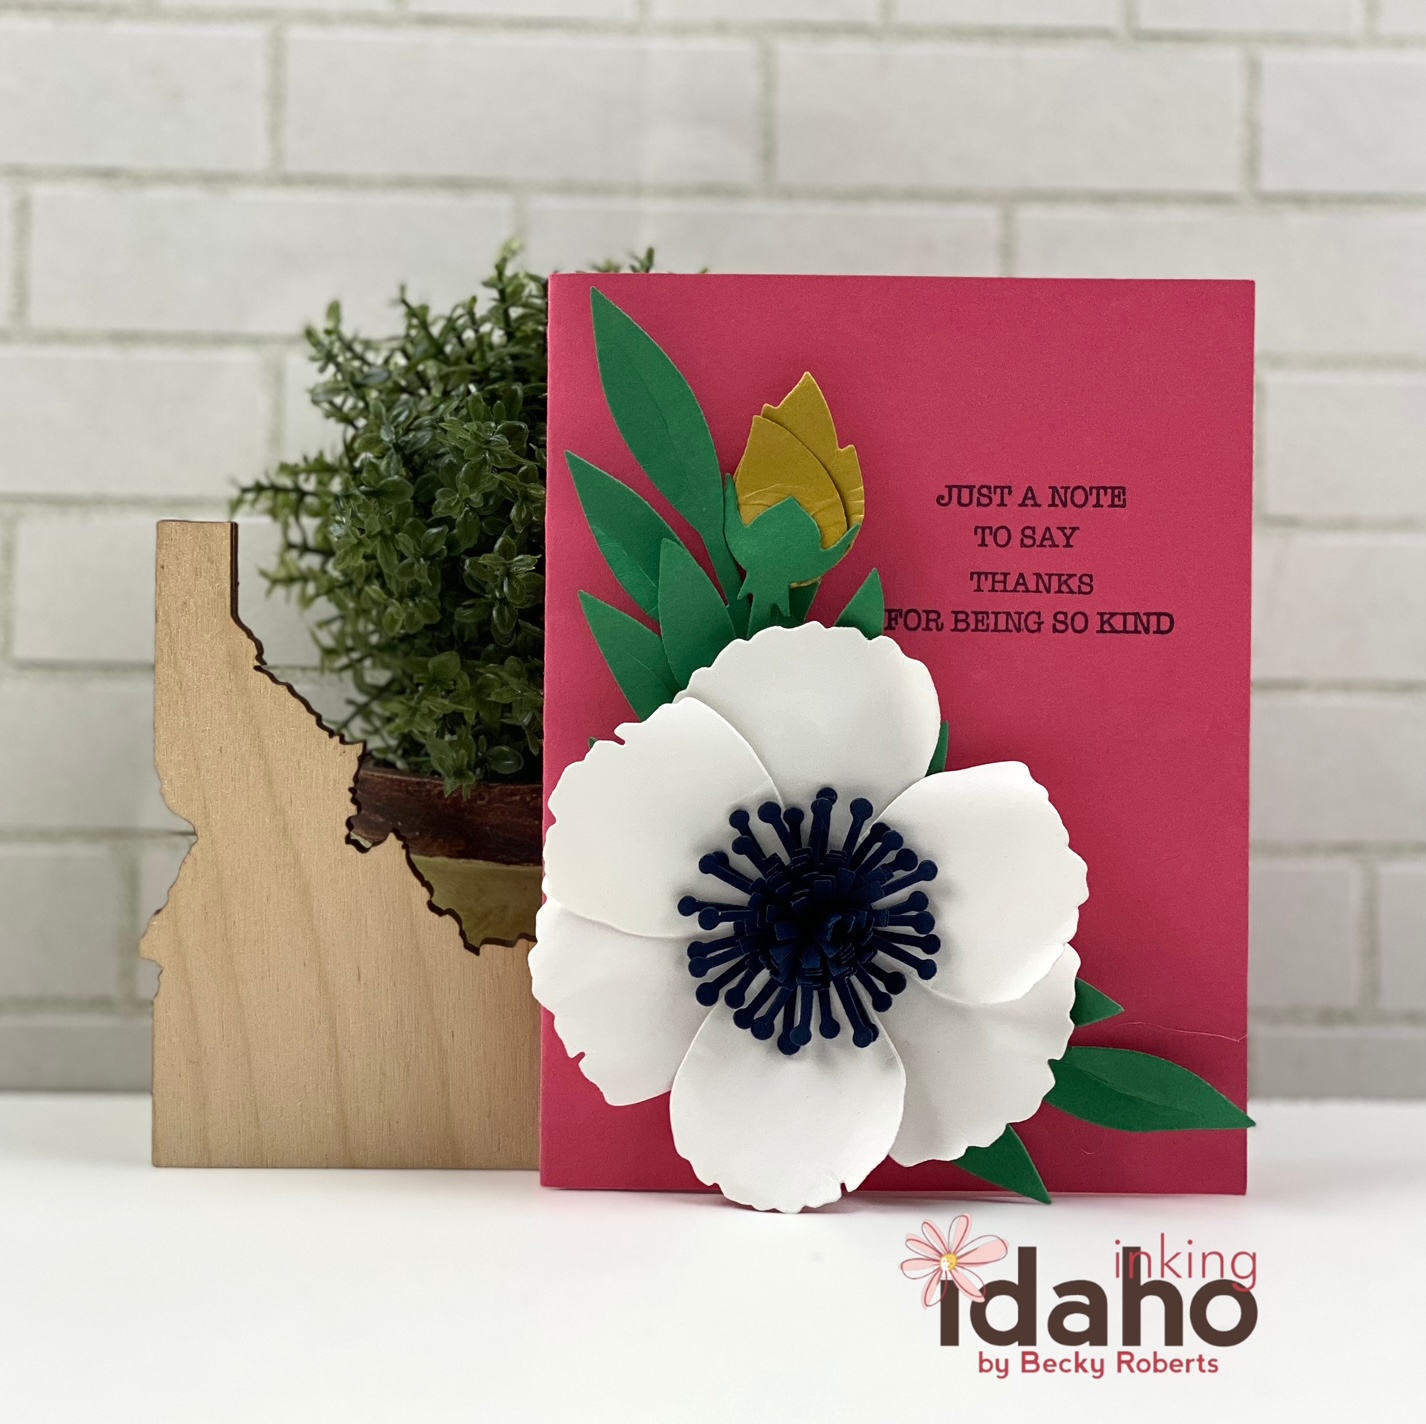 Inking Idaho: Just Wanted To Say Hi